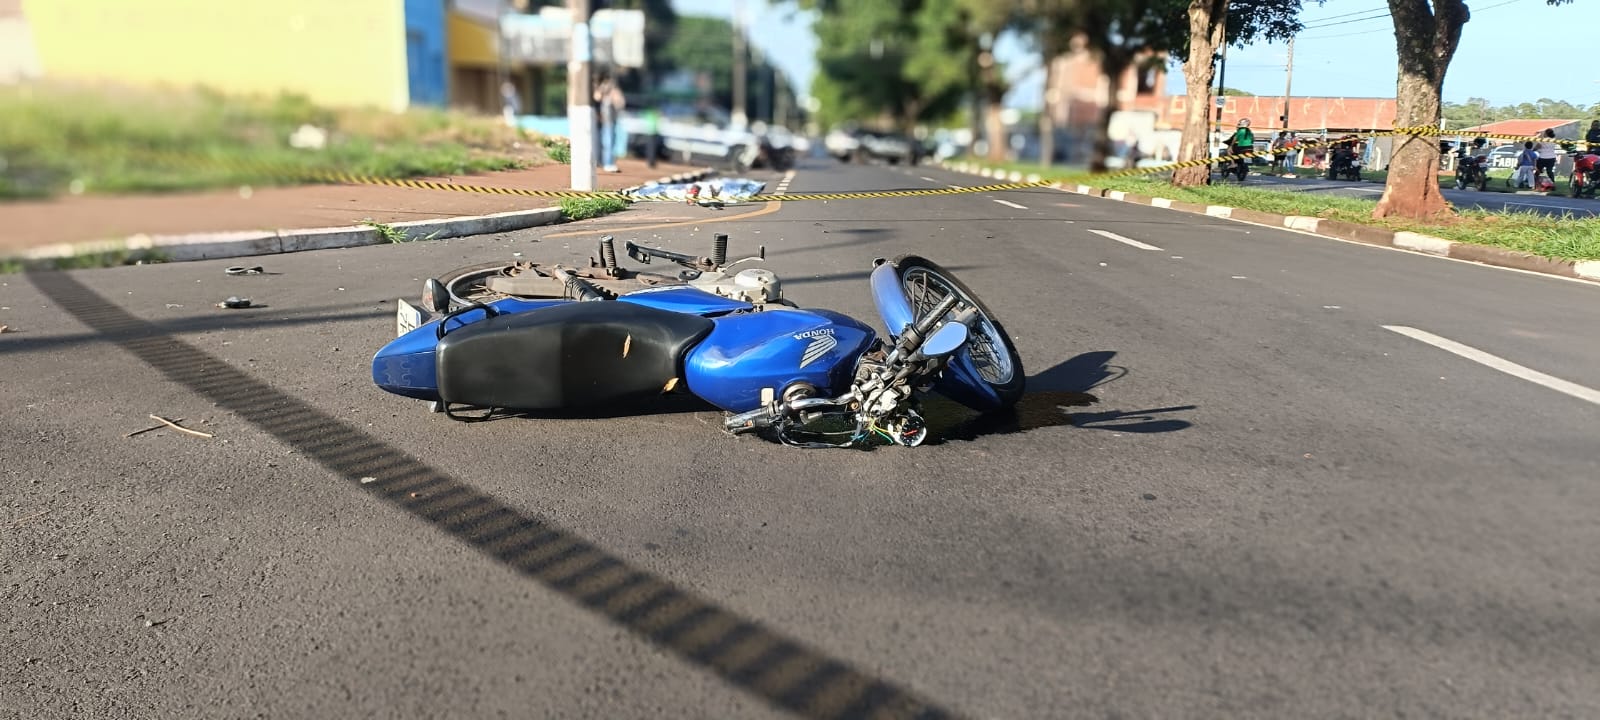 Acidente grave faz vítima fatal em Araras (SP), na madrugada desta  terça-feira